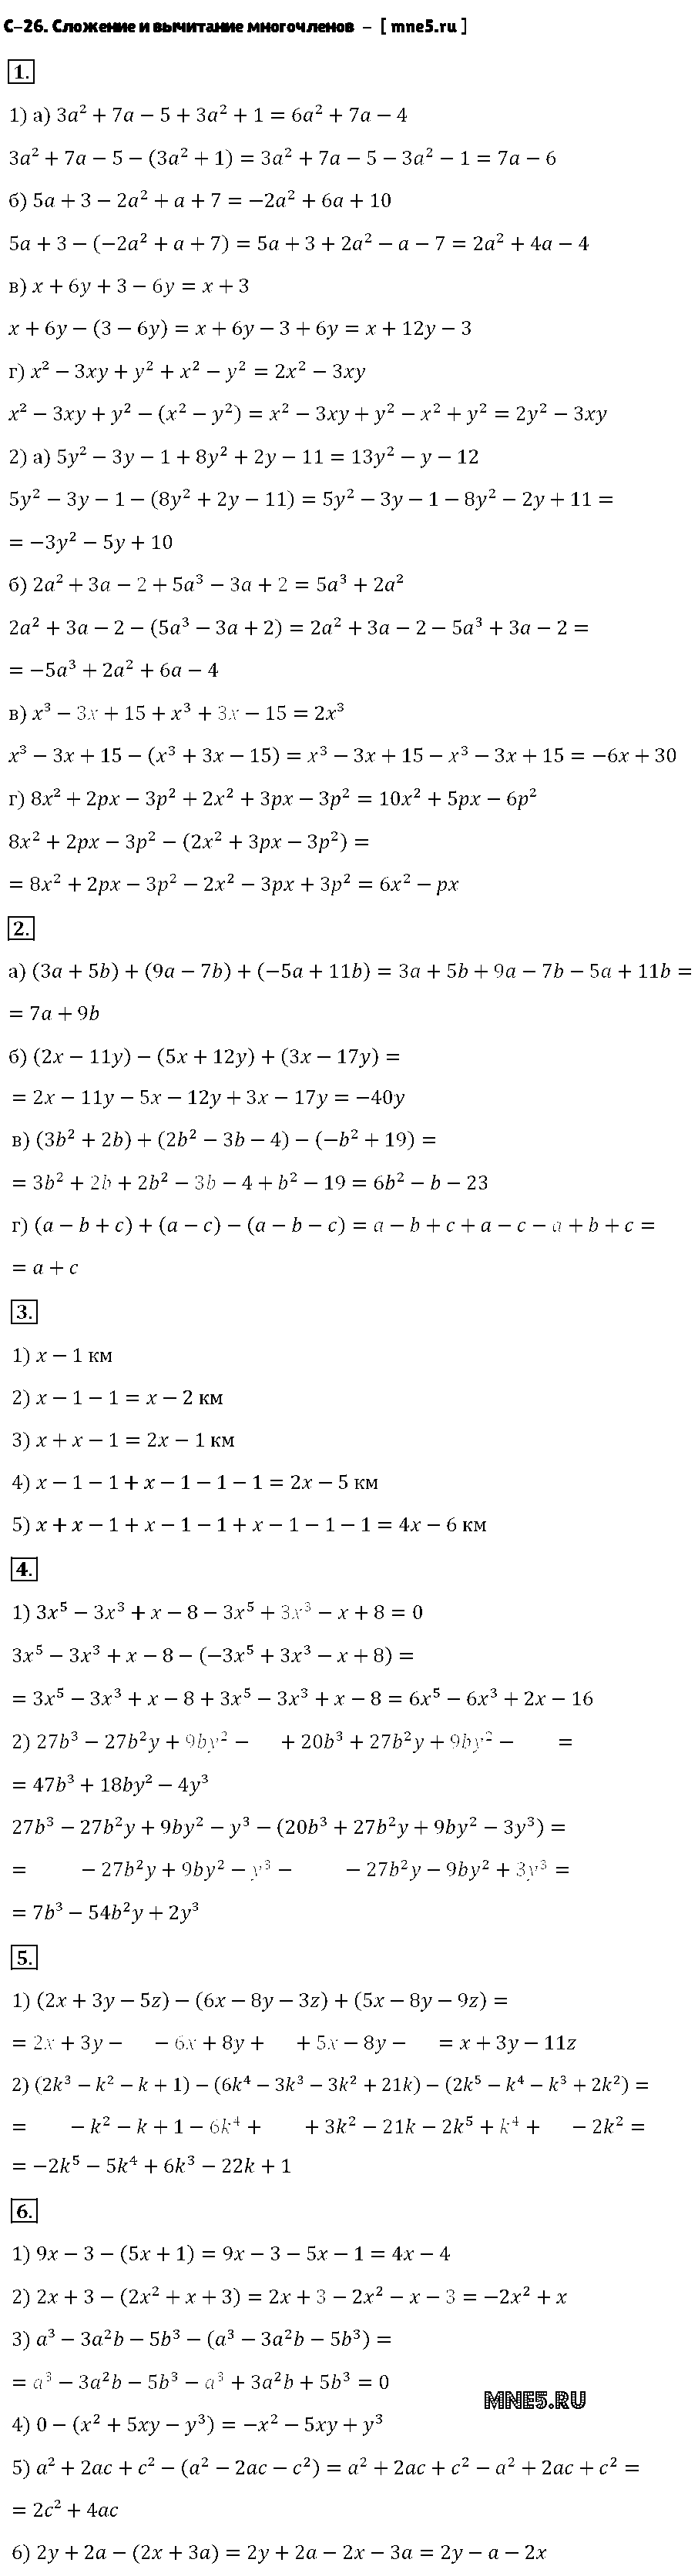 ГДЗ Алгебра 7 класс - С-26. Сложение и вычитание многочленов